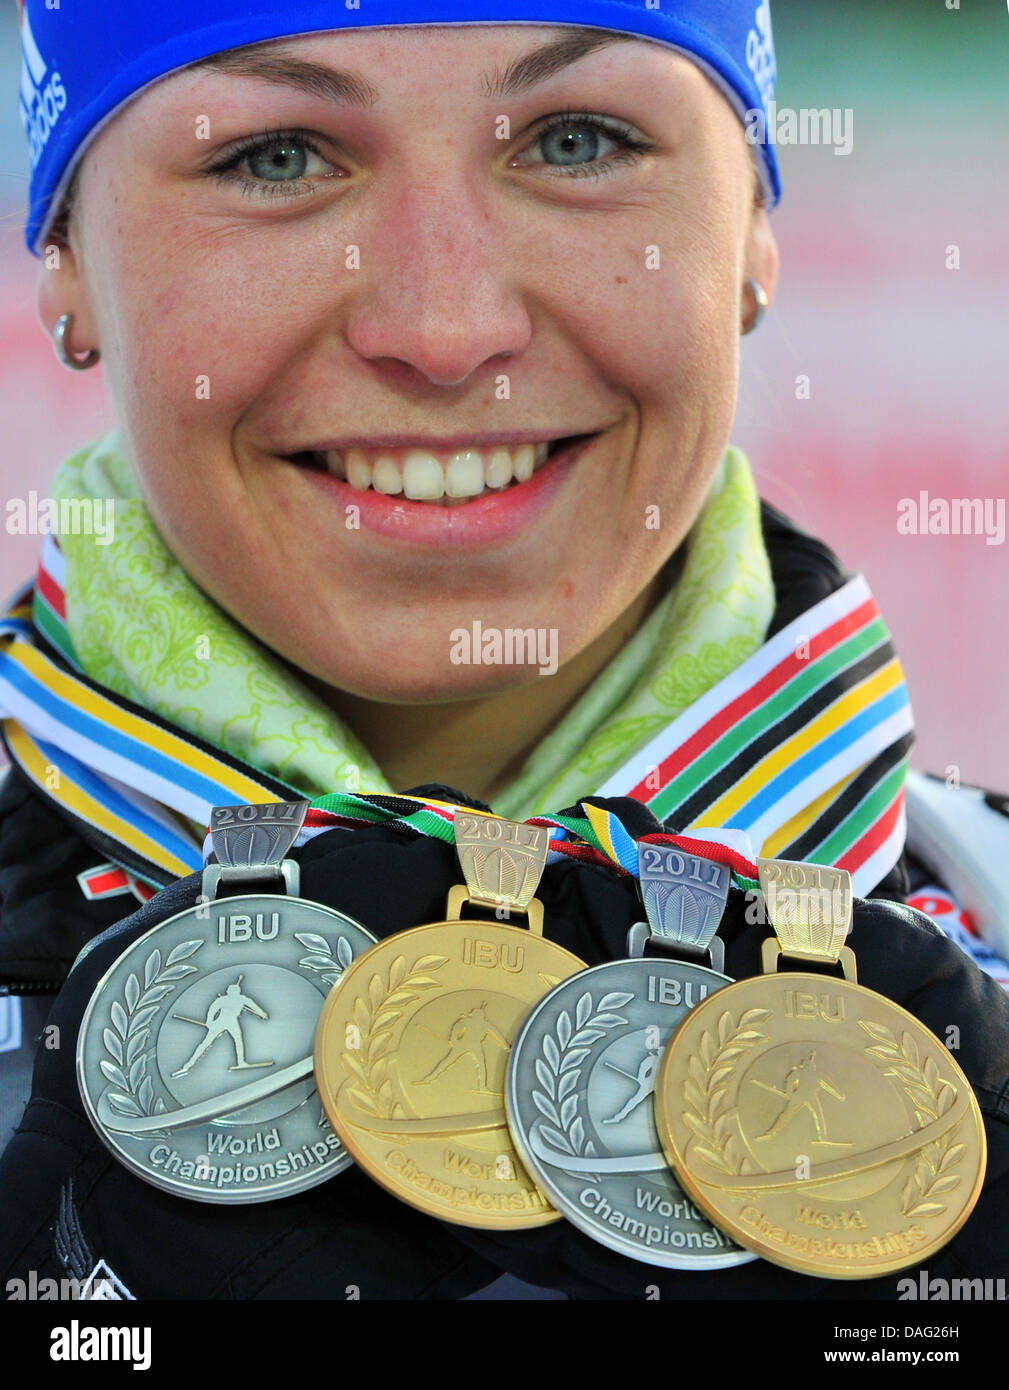 Magdalena Neuner Deutschland zeigt ihre Medaillen nach dem Gewinn der Frauen 12,5 km Massenstart bei den Biathlon-Weltmeisterschaften in A.V. Philipenko Winter Sports Centre in Chanty-Mansijsk, Russland, 12. März 2011. Foto: Martin Schutt dpa Stockfoto